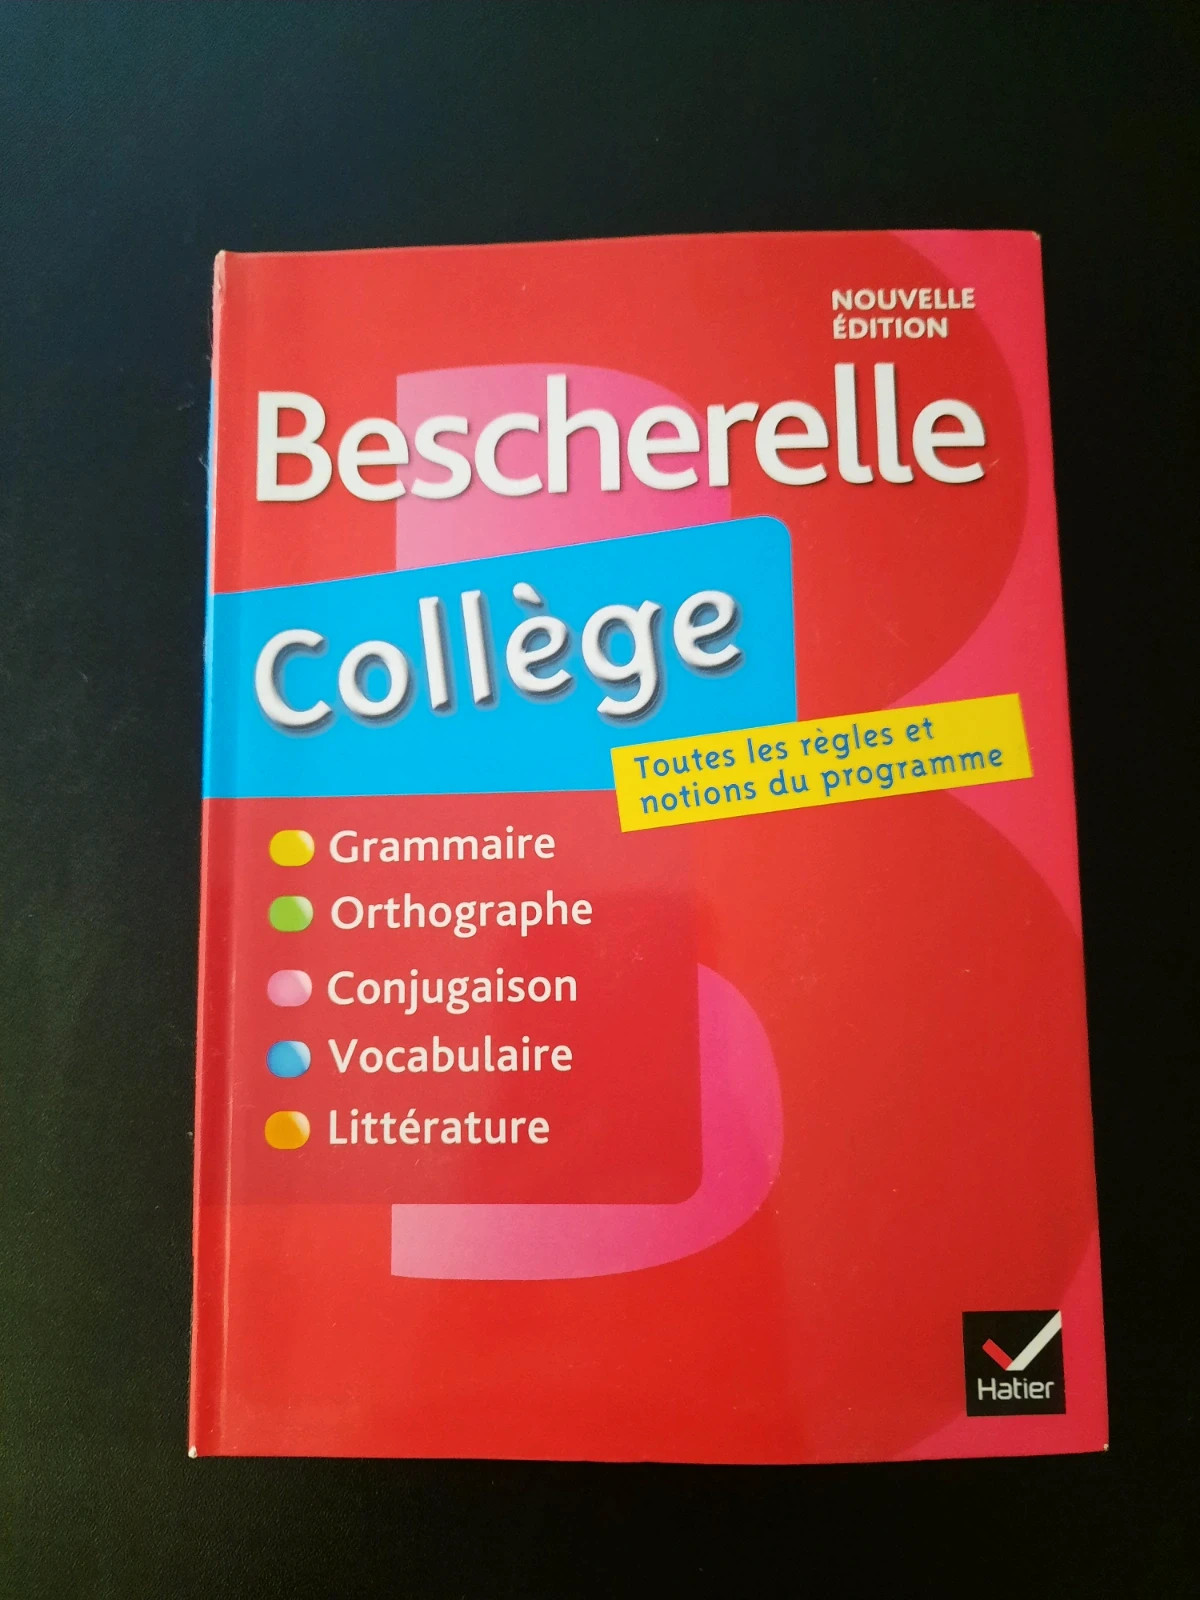 Bescherelle collège / nouveaux programmes de français, grammaire